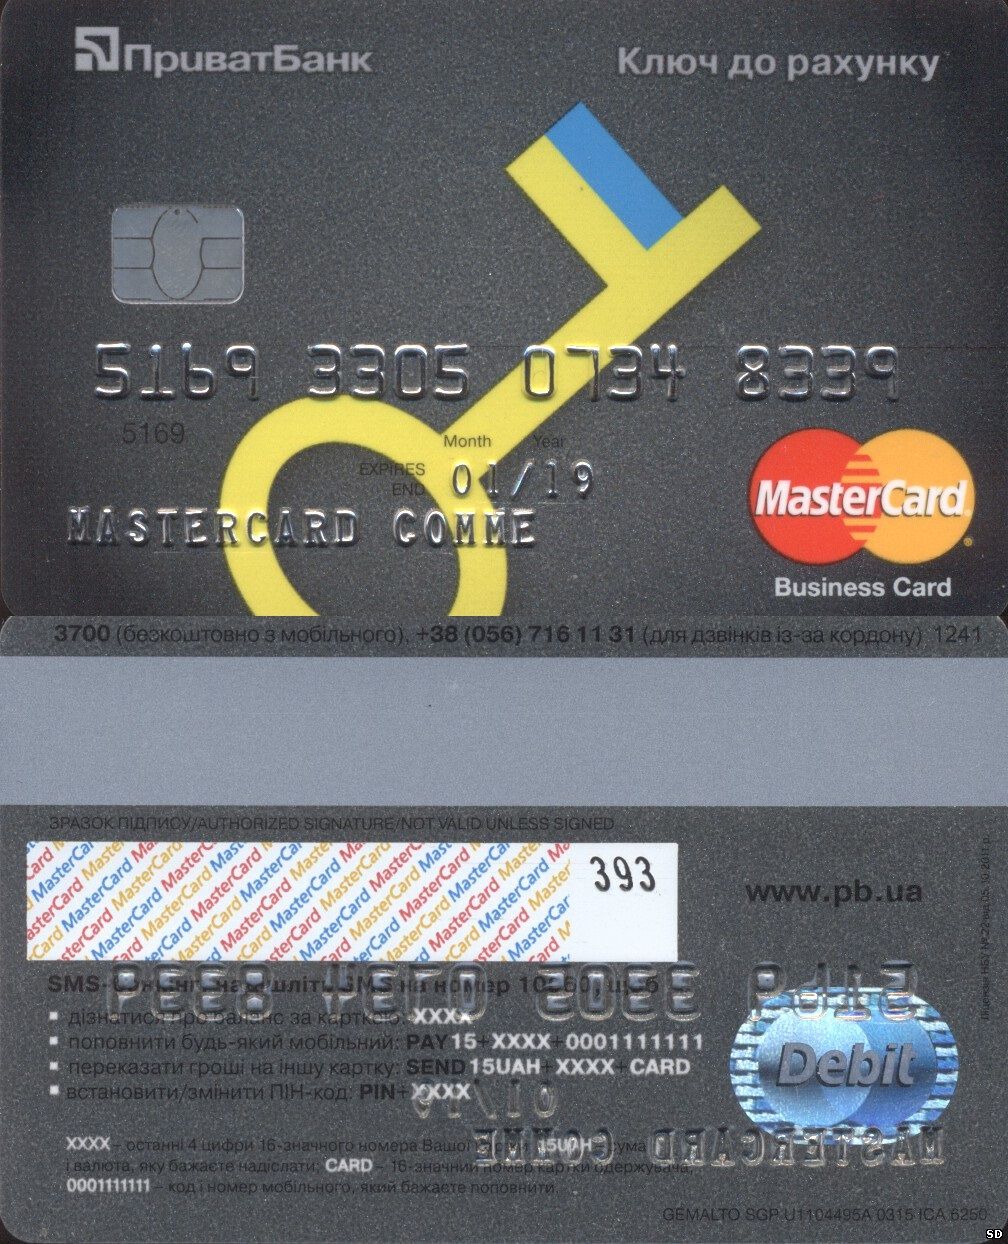 Схемы мошенничества с пластиковыми картами: при переводе денег на карту, через мобильный банк